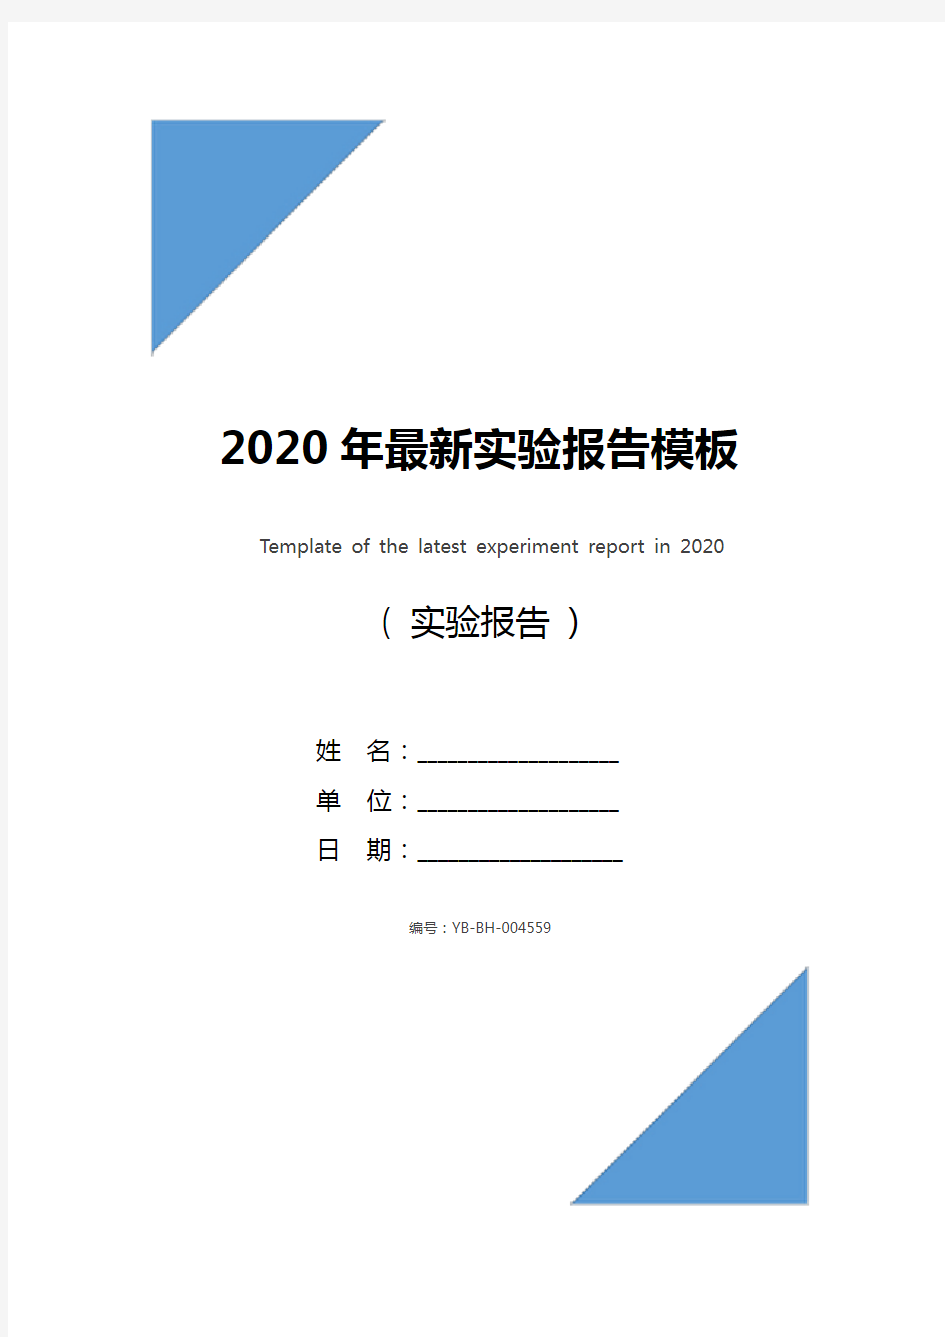 2020年最新实验报告模板_1